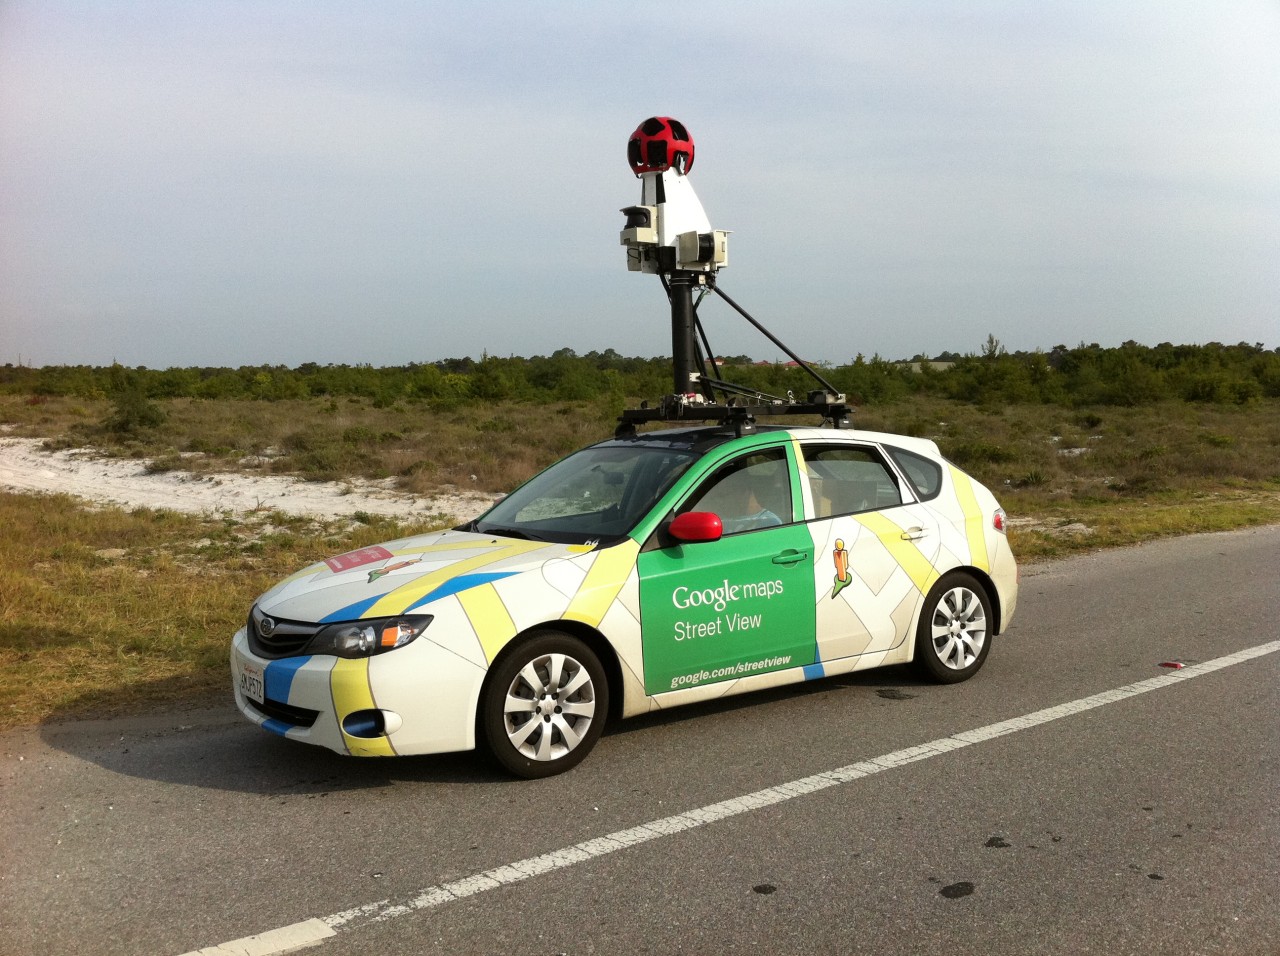 Машина для съемки панорам улиц Google